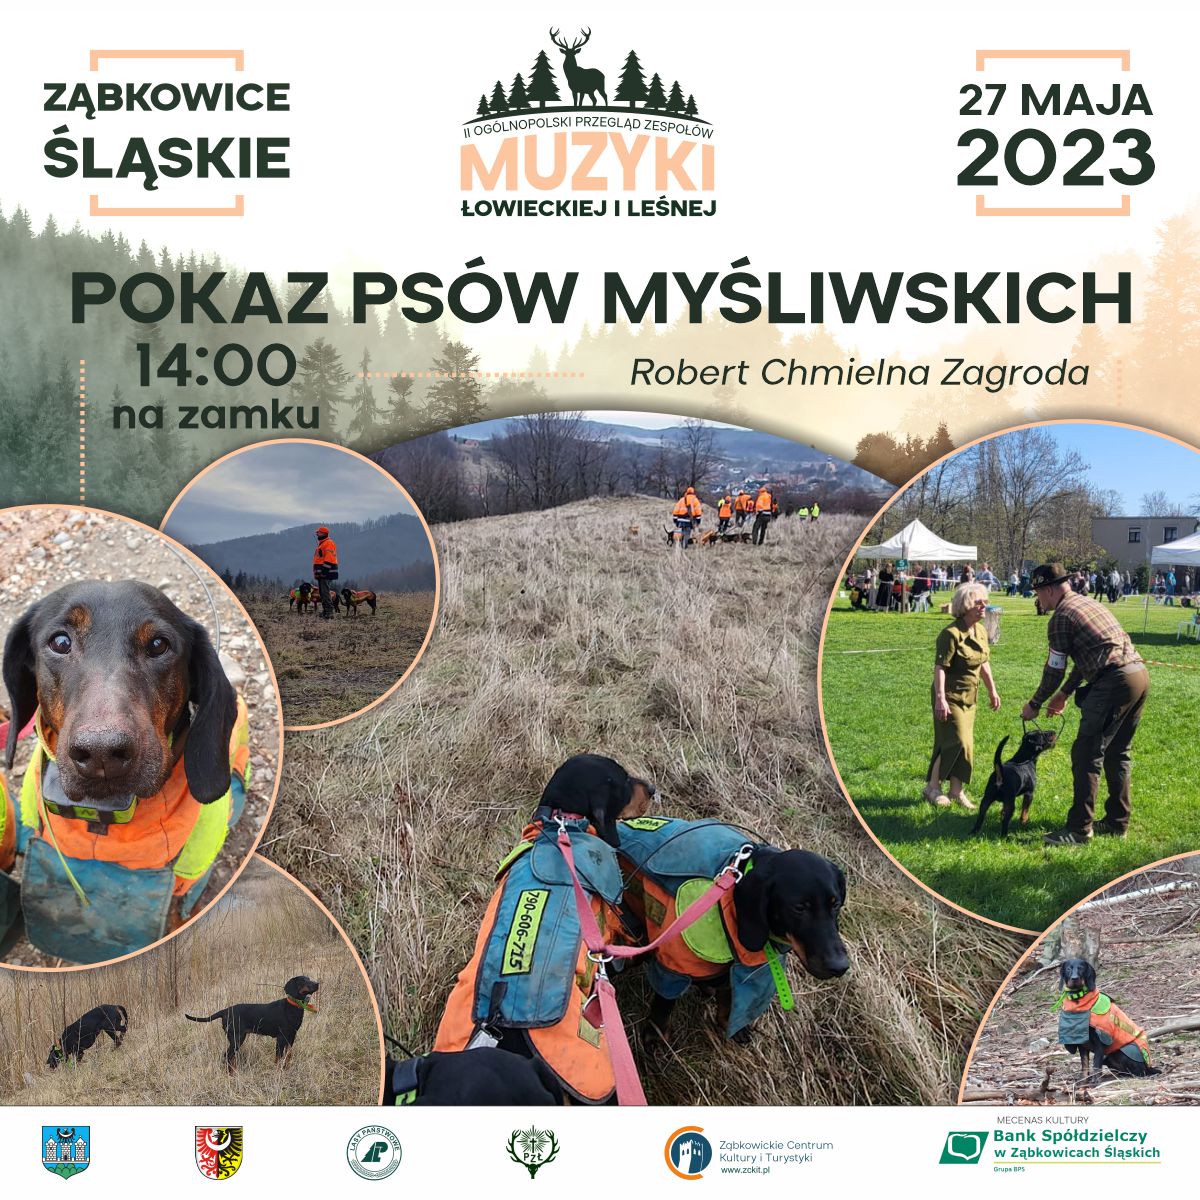 Plakat informujący i pokazie psów myśliwskich 27 maja o godz. 14:00 w Ząbkowicach Śląskich